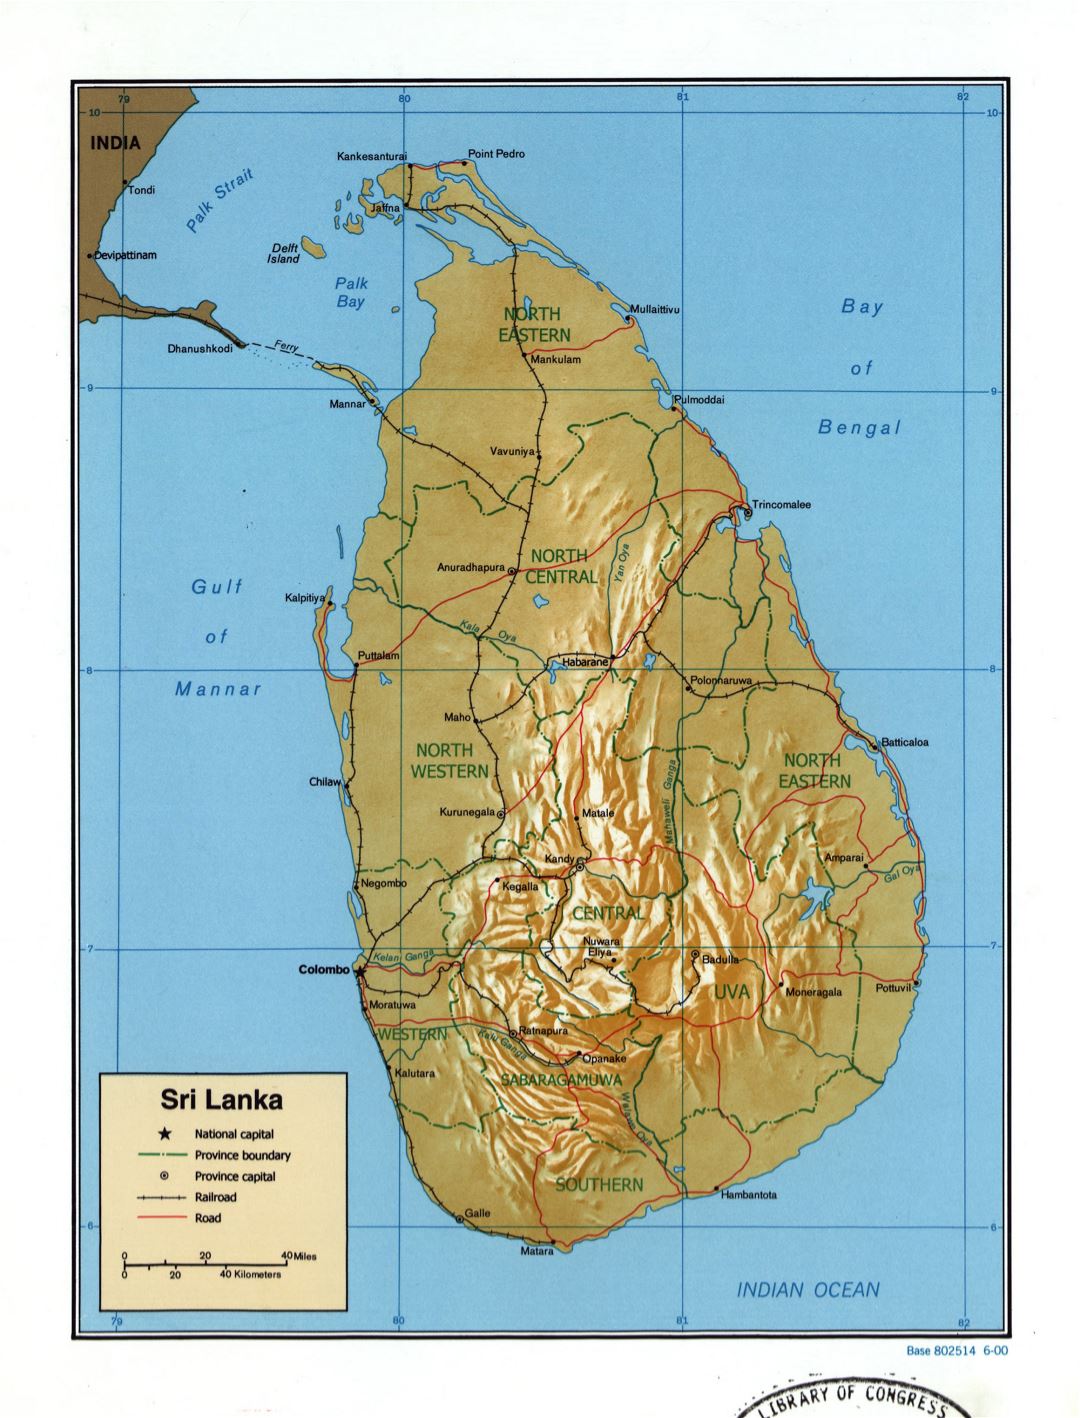 Grande detallado mapa político y administrativo de Sri Lanka con relieve, carreteras, ferrocarriles y principales ciudades - 2000